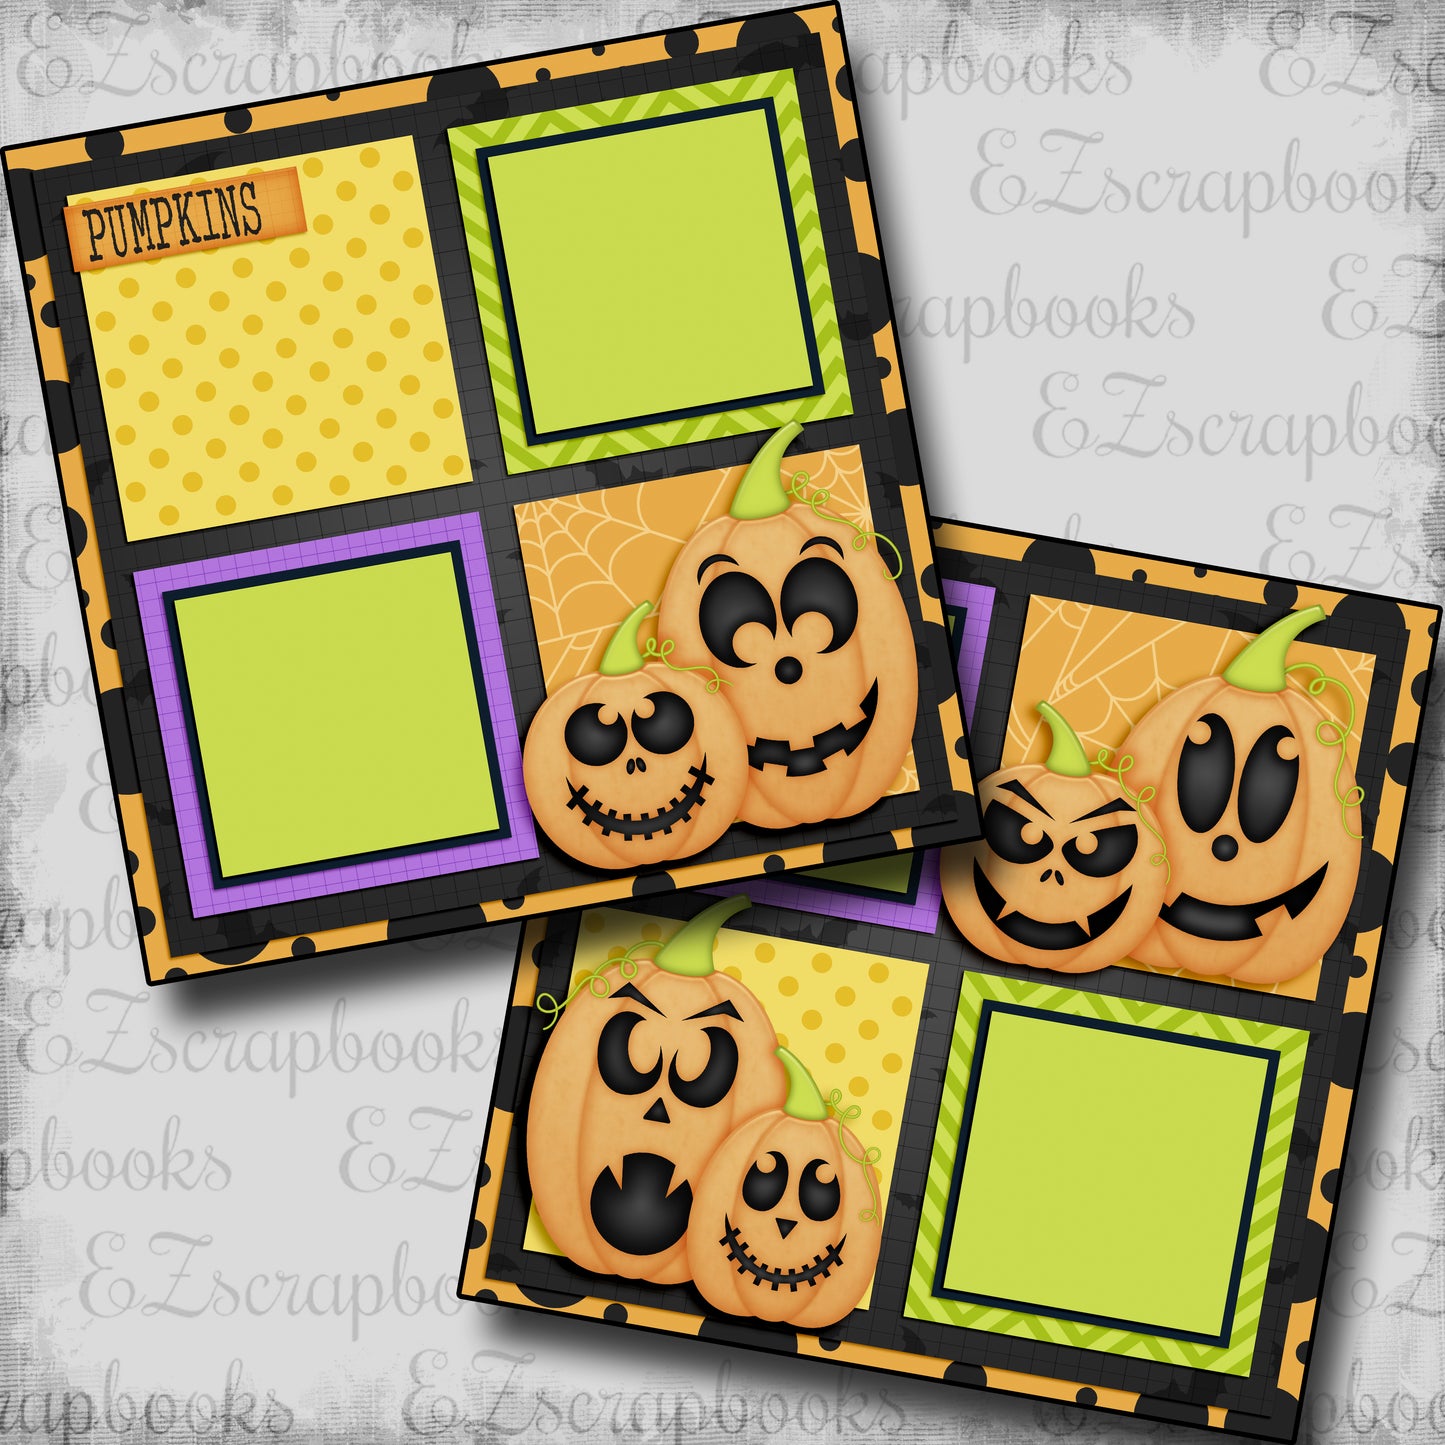 Pumpkins - 5560 - EZscrapbooks Scrapbook Layouts Halloween